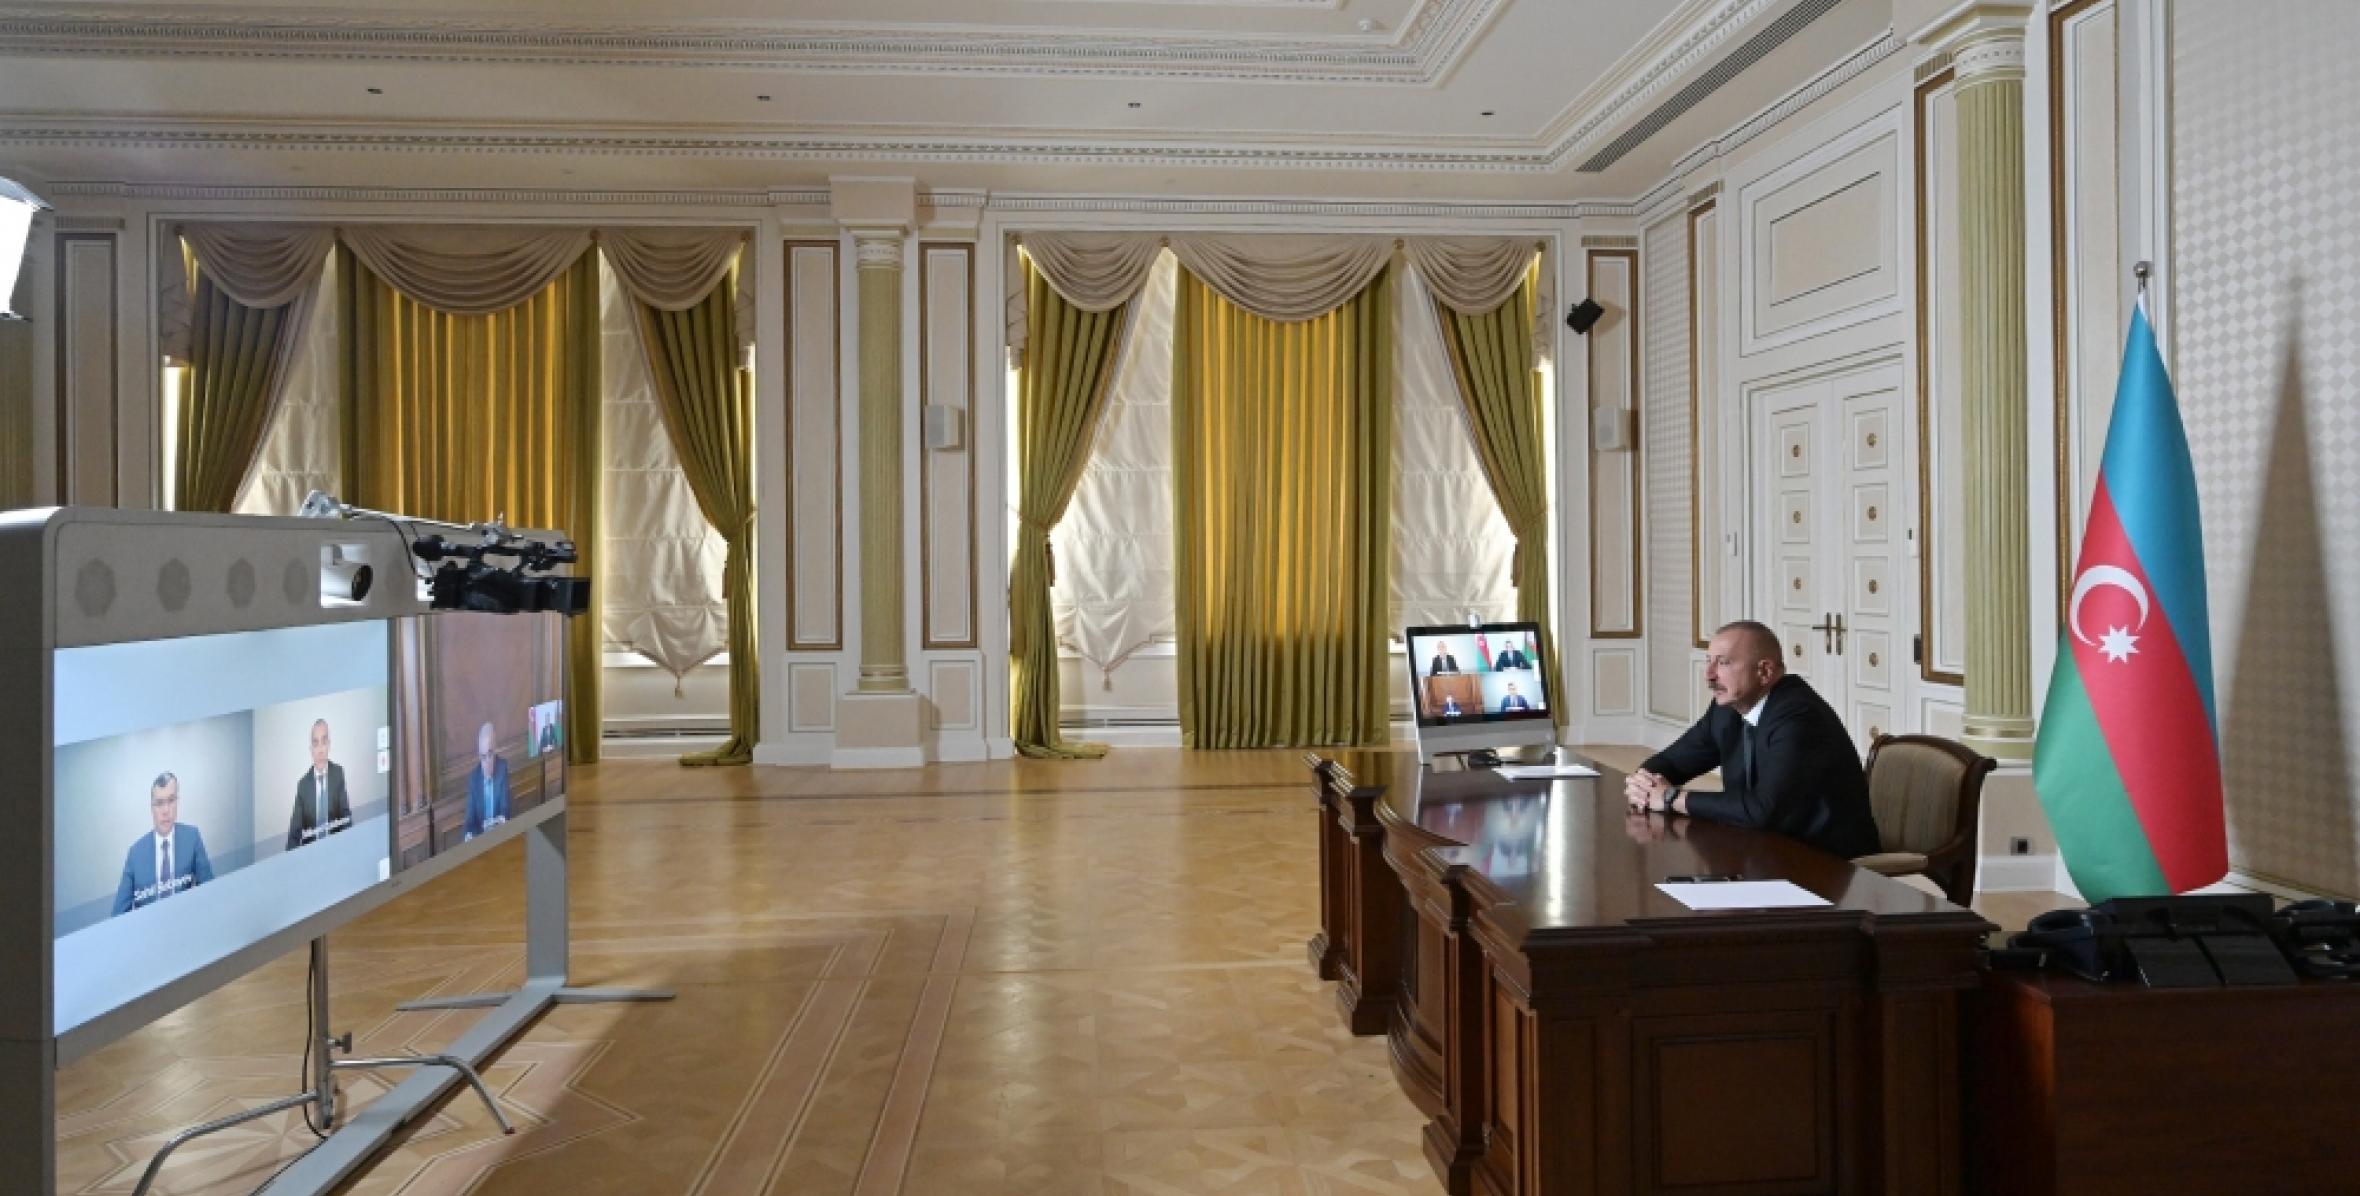 Ильхам Алиев провел совещание в видеоформате в связи с проведенными мерами по борьбе с коронавирусом и социально-экономической ситуацией